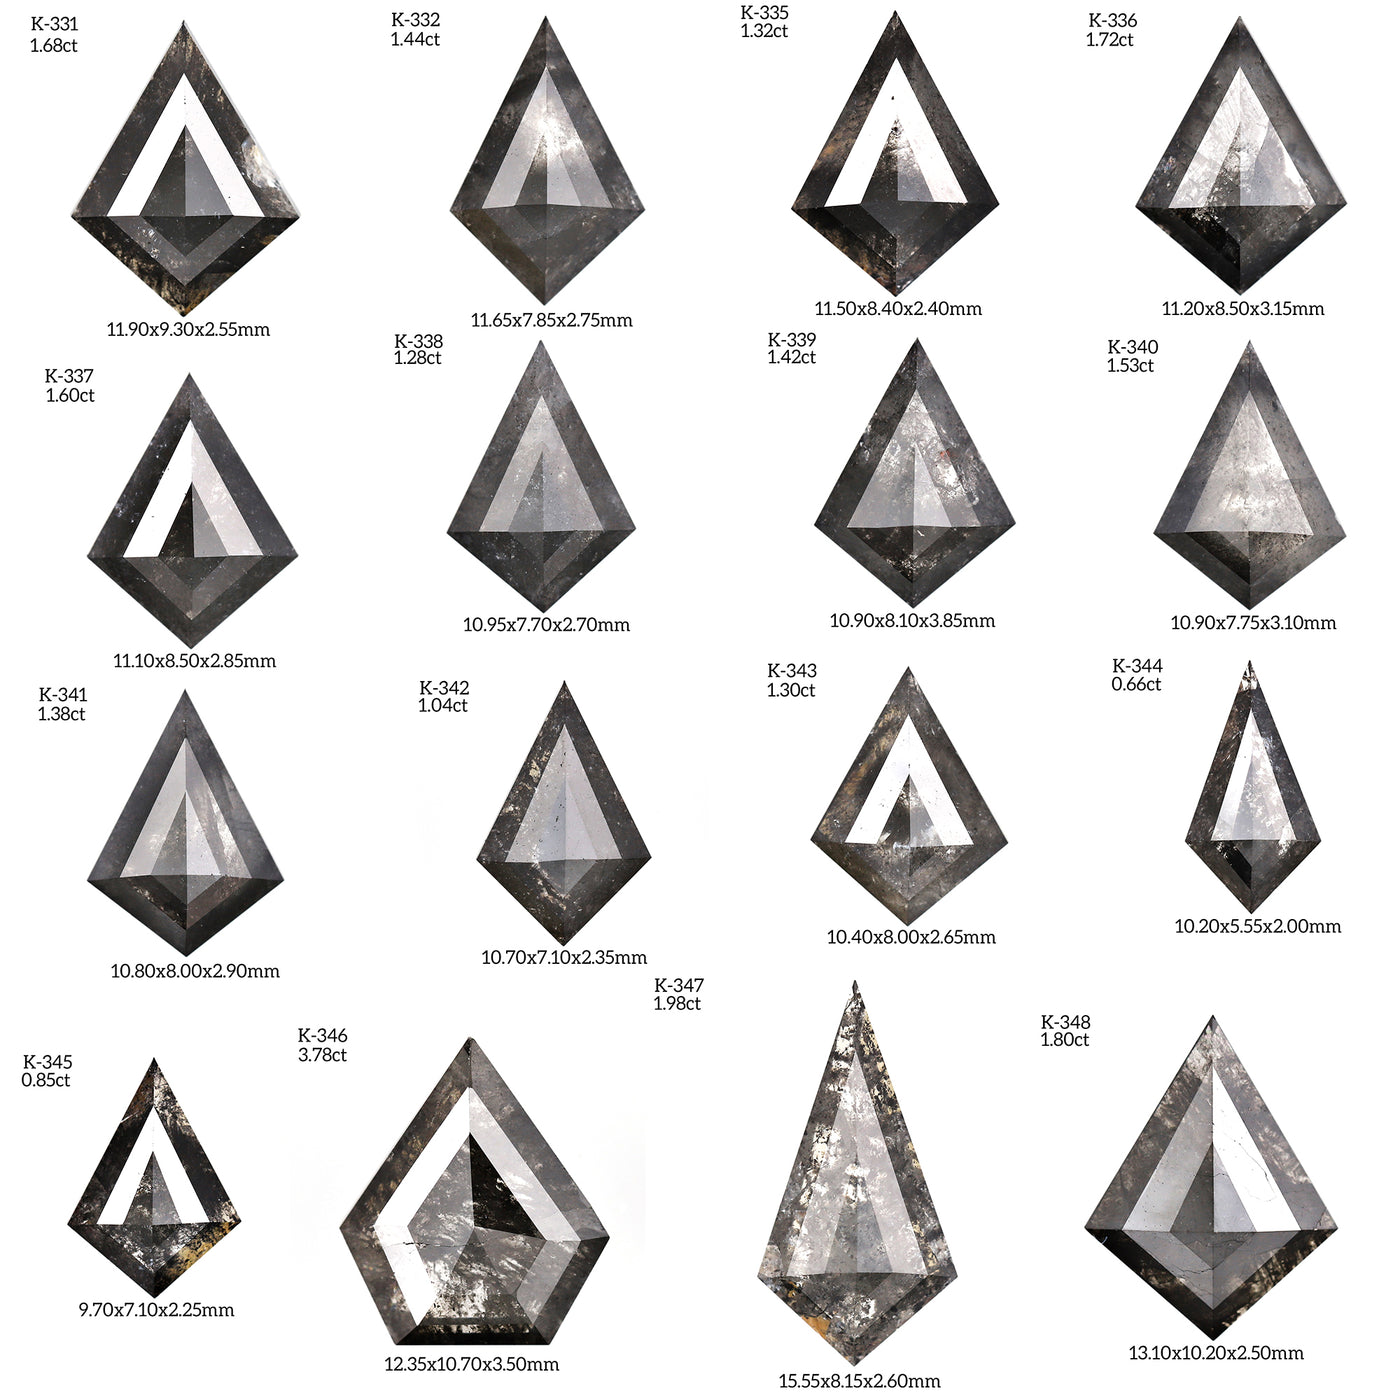 K338 - Salt and pepper kite diamond